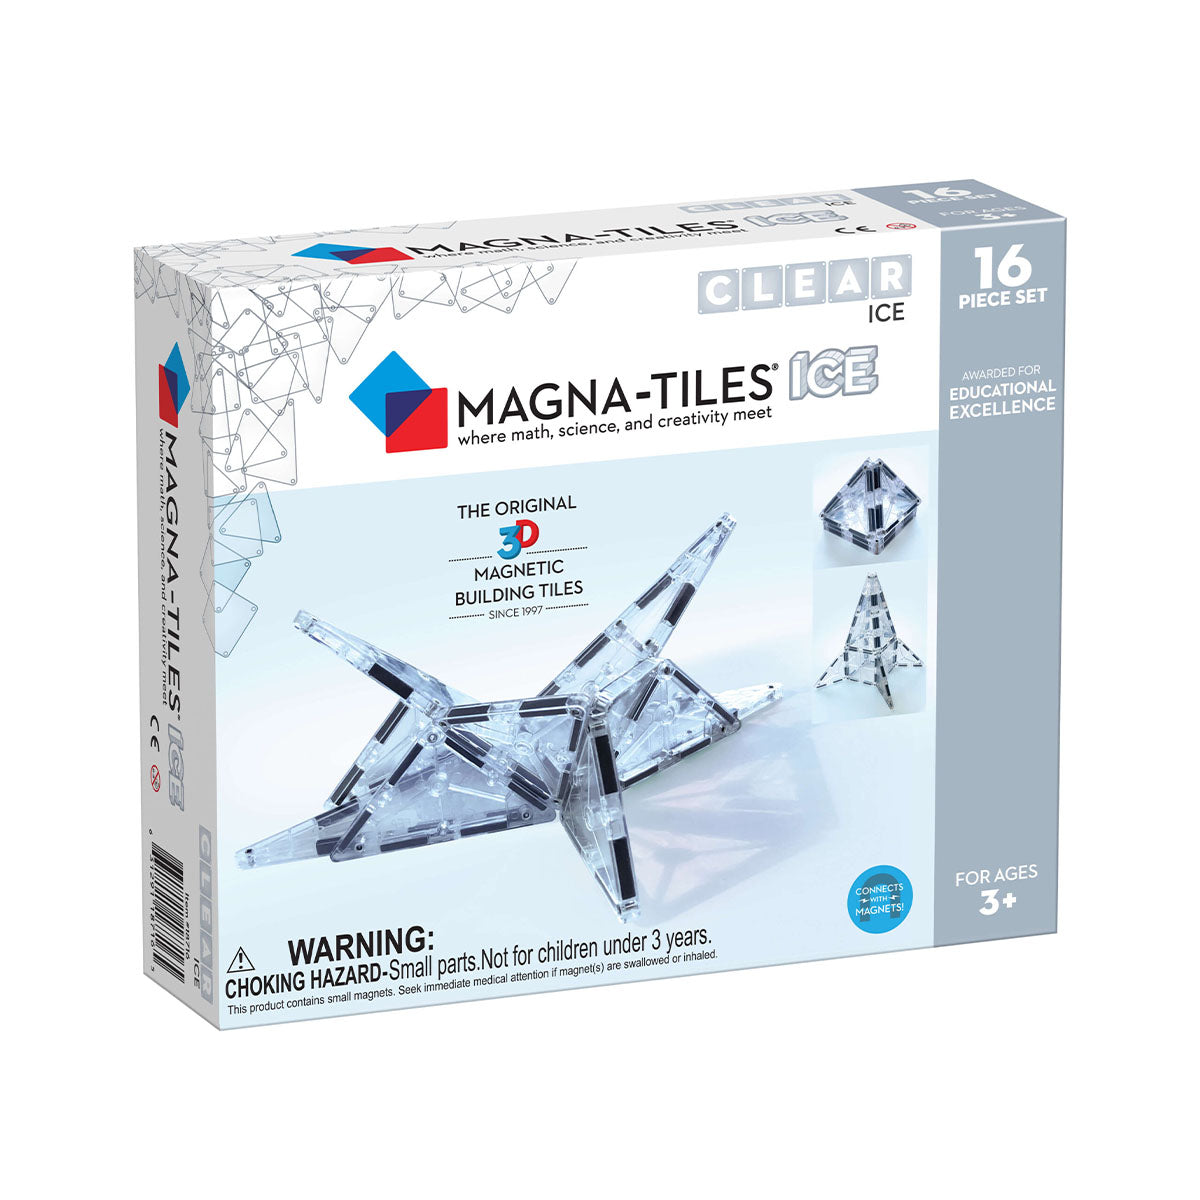 De Magna-Tiles ICE 16 stuks set bestaat uit 16 transparante magnetische bouwstenen. Een leuke variatie op de klassieke, gekleurde bouwstenen. Deze zijn dan ook heel goed met elkaar te combineren. VanZus.